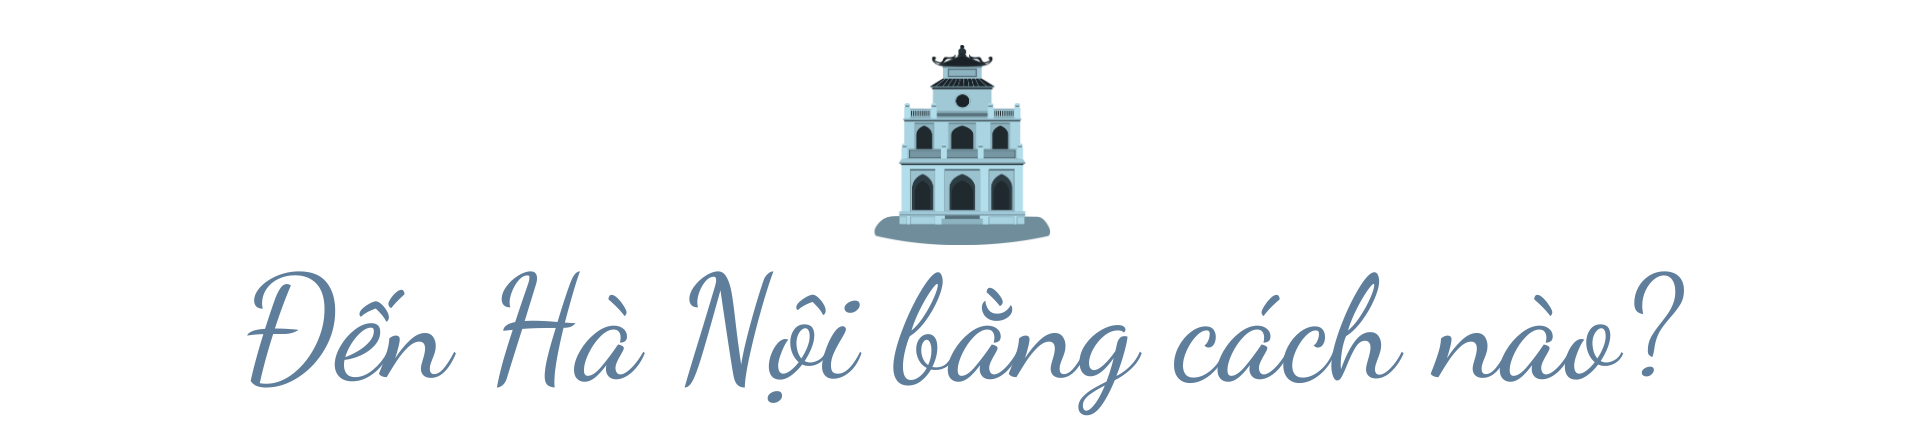 Cẩm nang du lịch Hà Nội: Từ kinh đô văn hóa ngàn năm đến thành phố du lịch năng động - Ảnh 1.